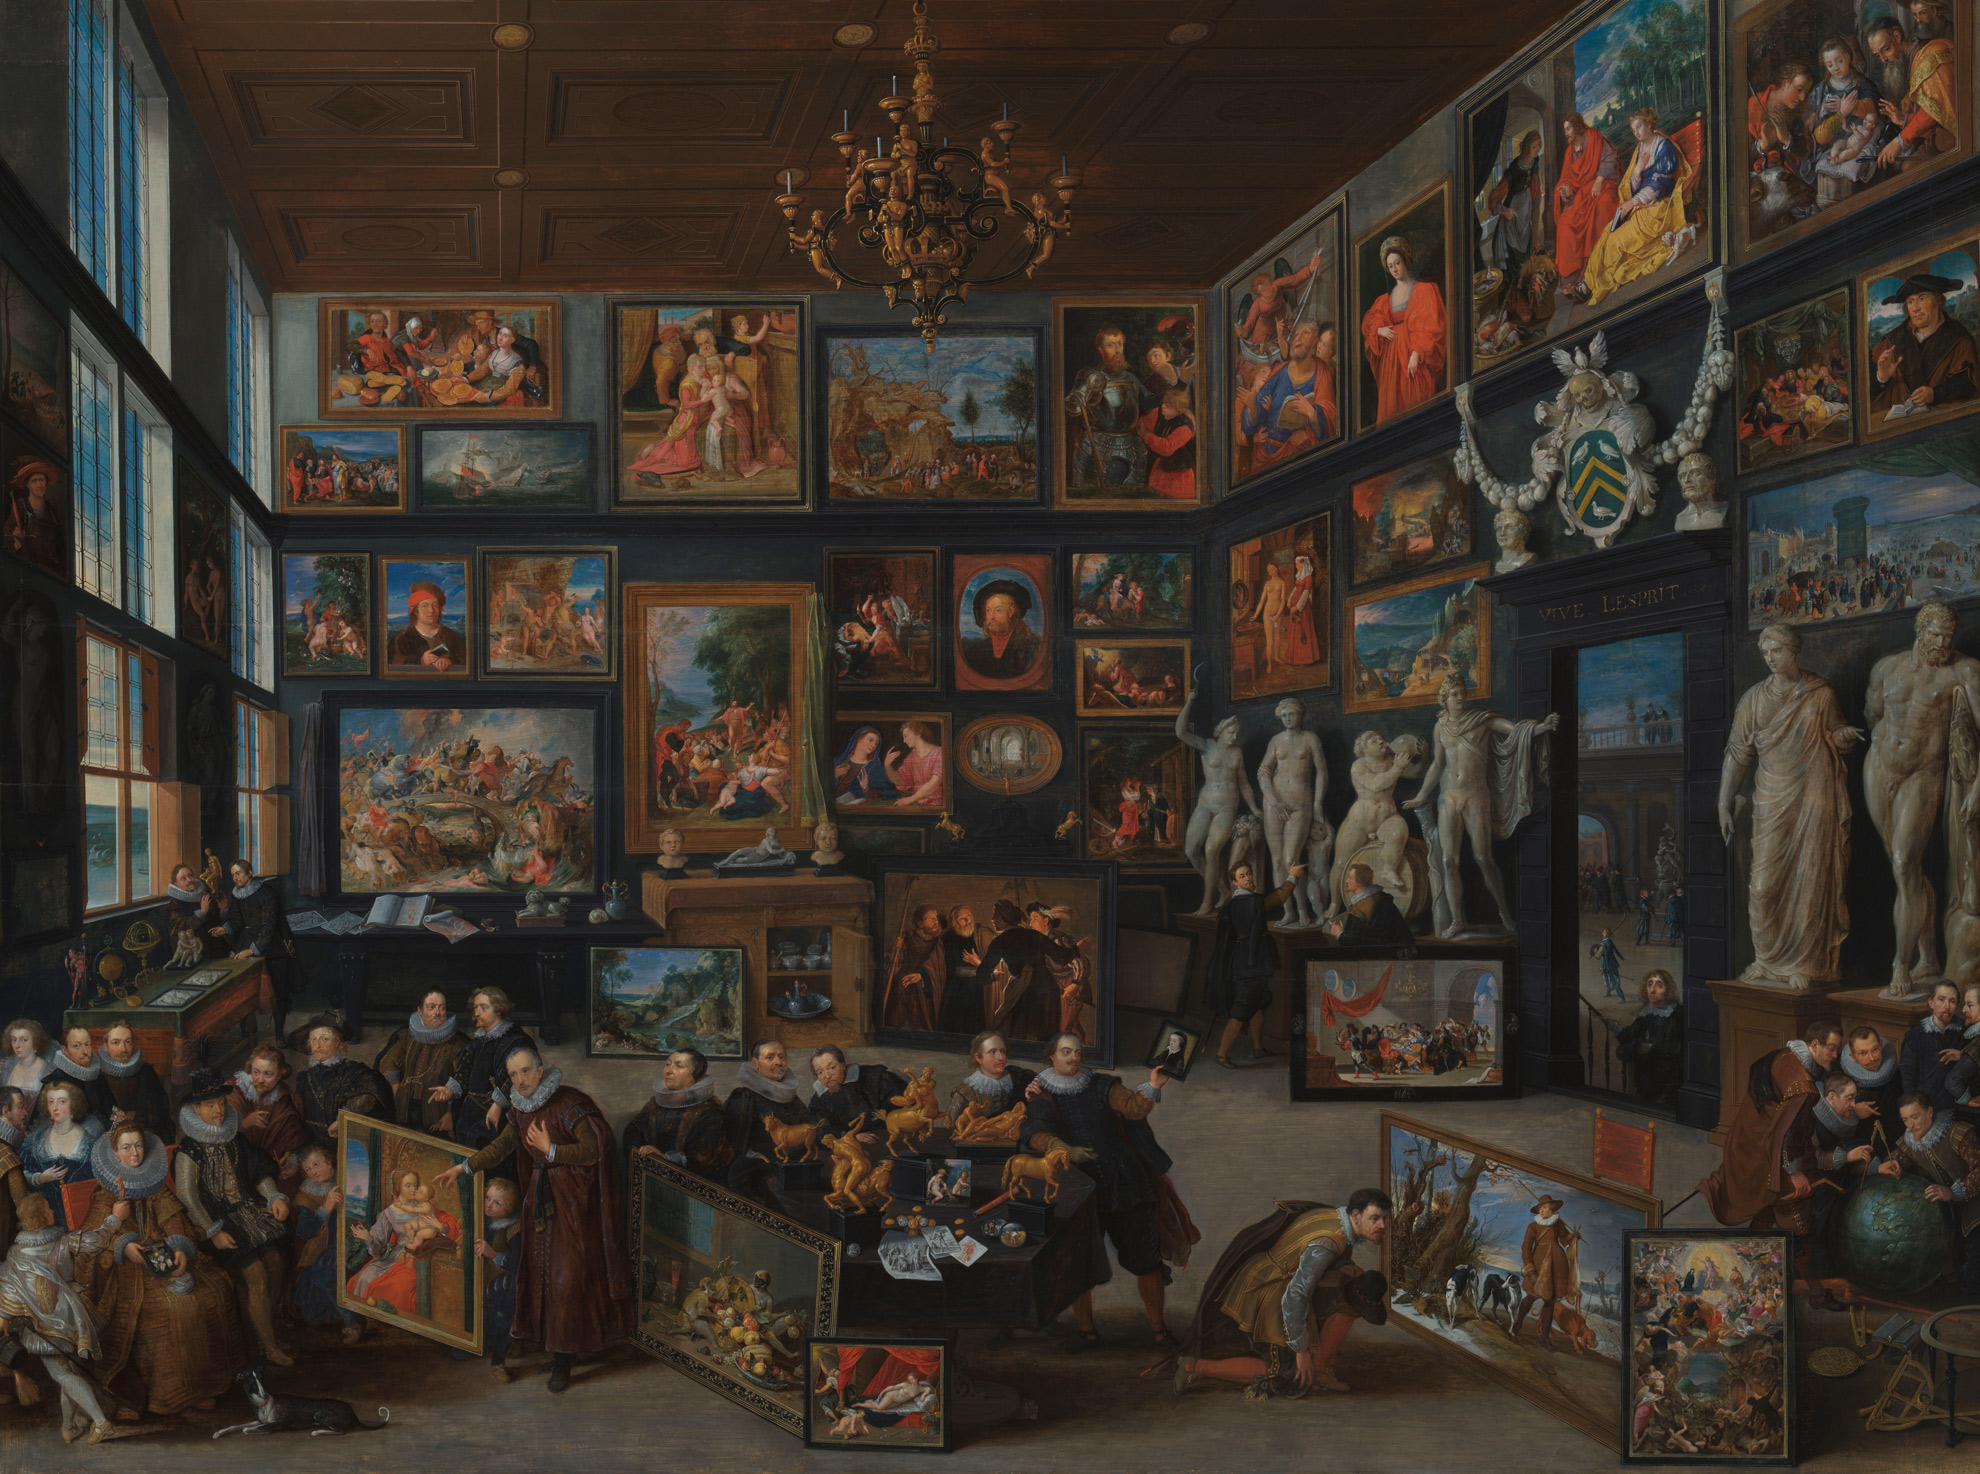 Ein Gemälde, das die Sammlung des Cornelis van der Geest in Antwerpen zeigt. Auf dem Gemälde ist ein Raum zu sehen, in dem zahlreiche Kunstwerke hängen. Am unteren Bildrand sind einige Menschen versammelt, die sich die Werke ansehen.